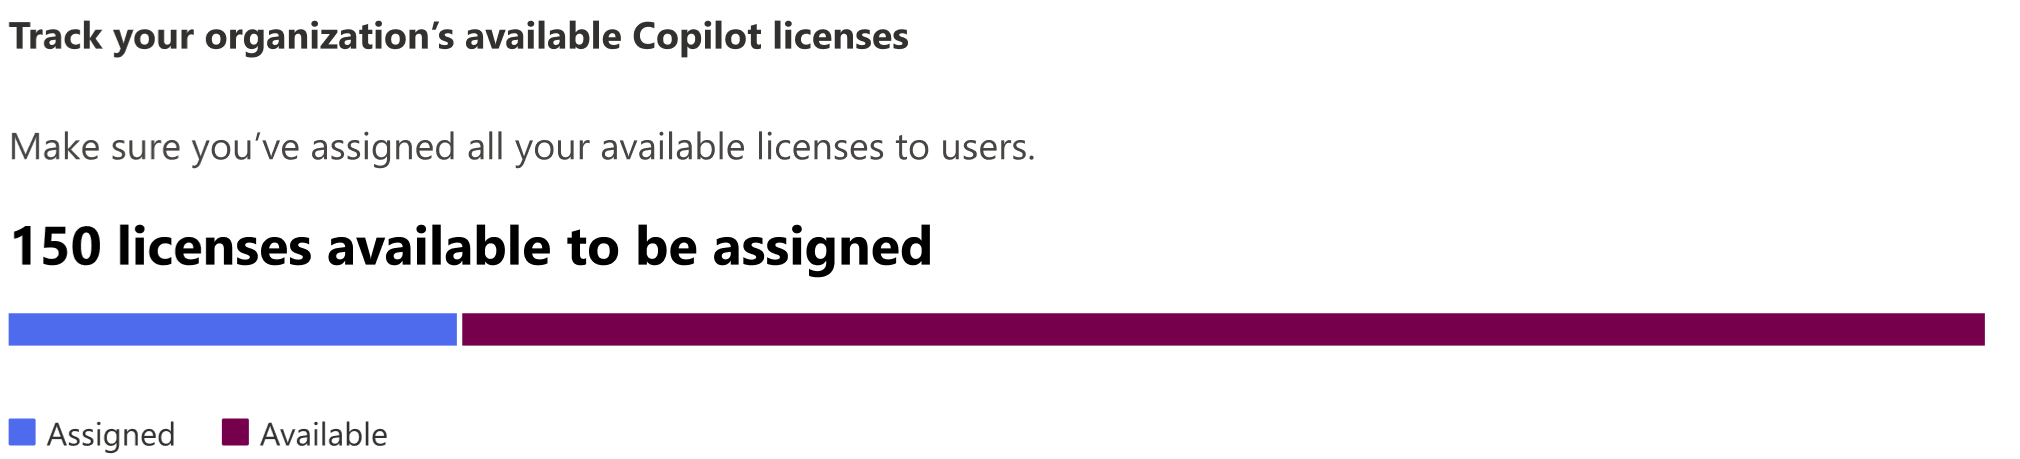 Снимок экрана: количество доступных лицензий для назначения в организации.